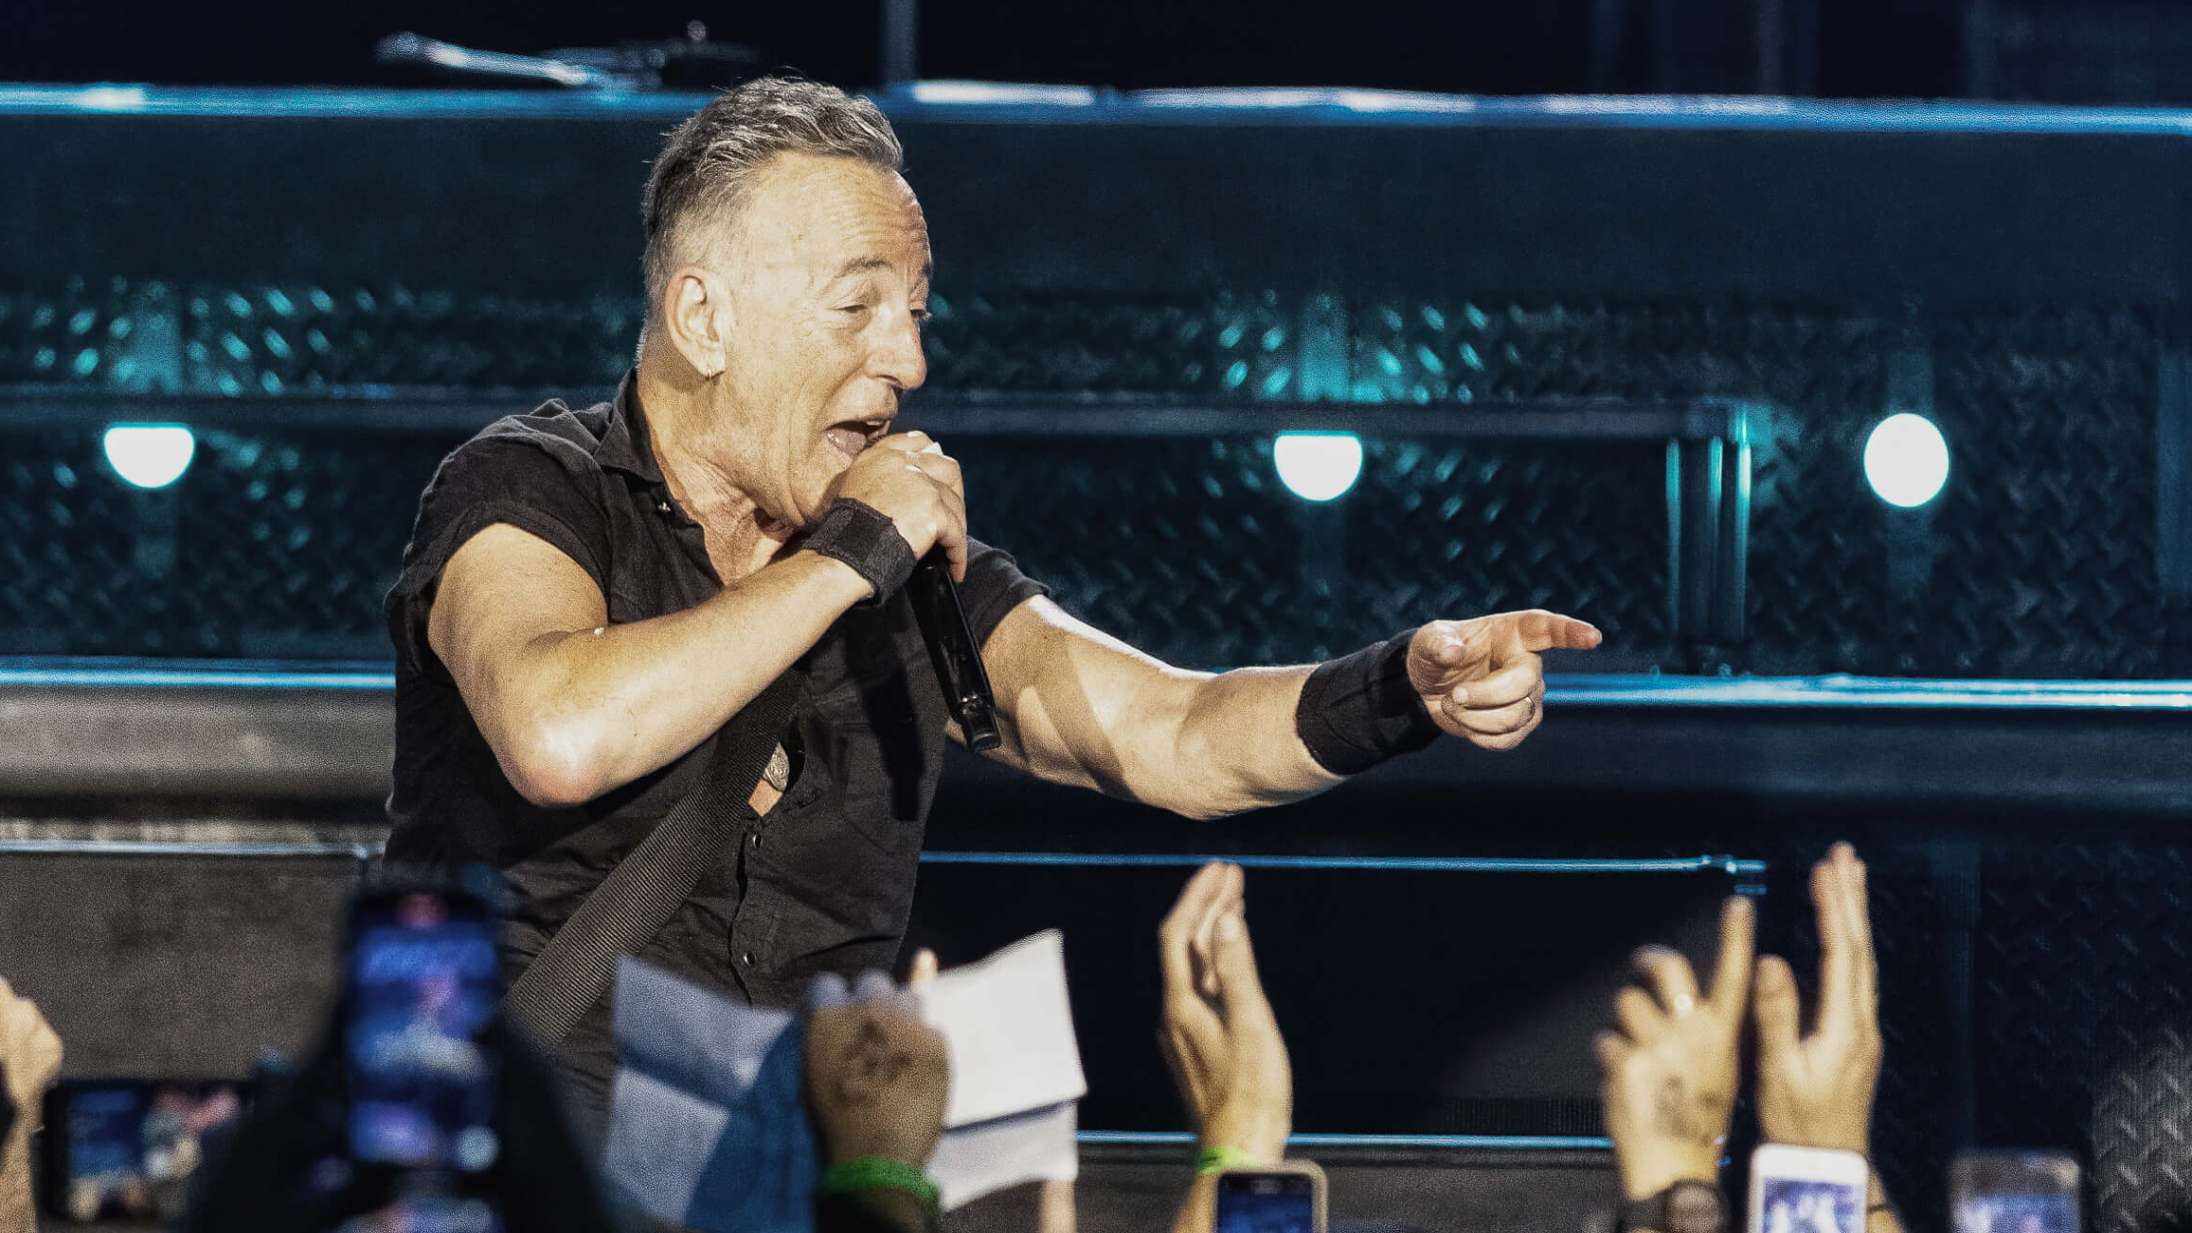 Oprigtigheden var til at føle på, da Bruce Springsteen kiggede en ung koncertgænger dybt i øjnene